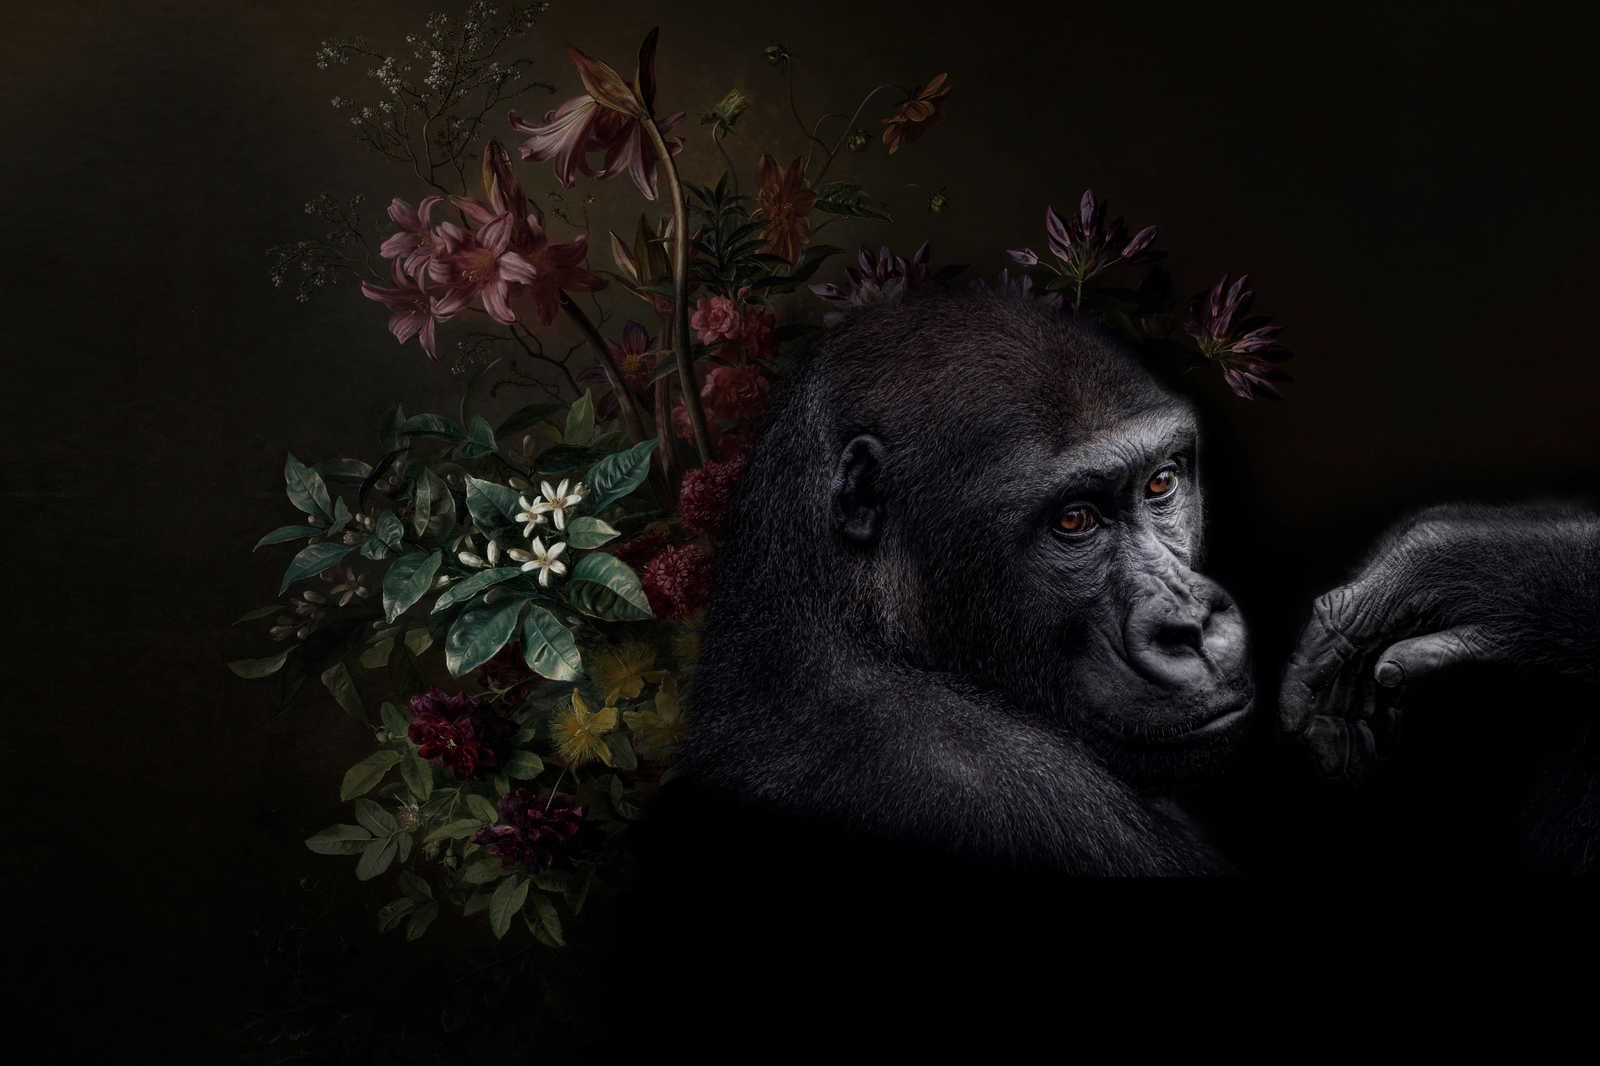             Cuadro Gorila Retrato con flores - 0,90 m x 0,60 m
        